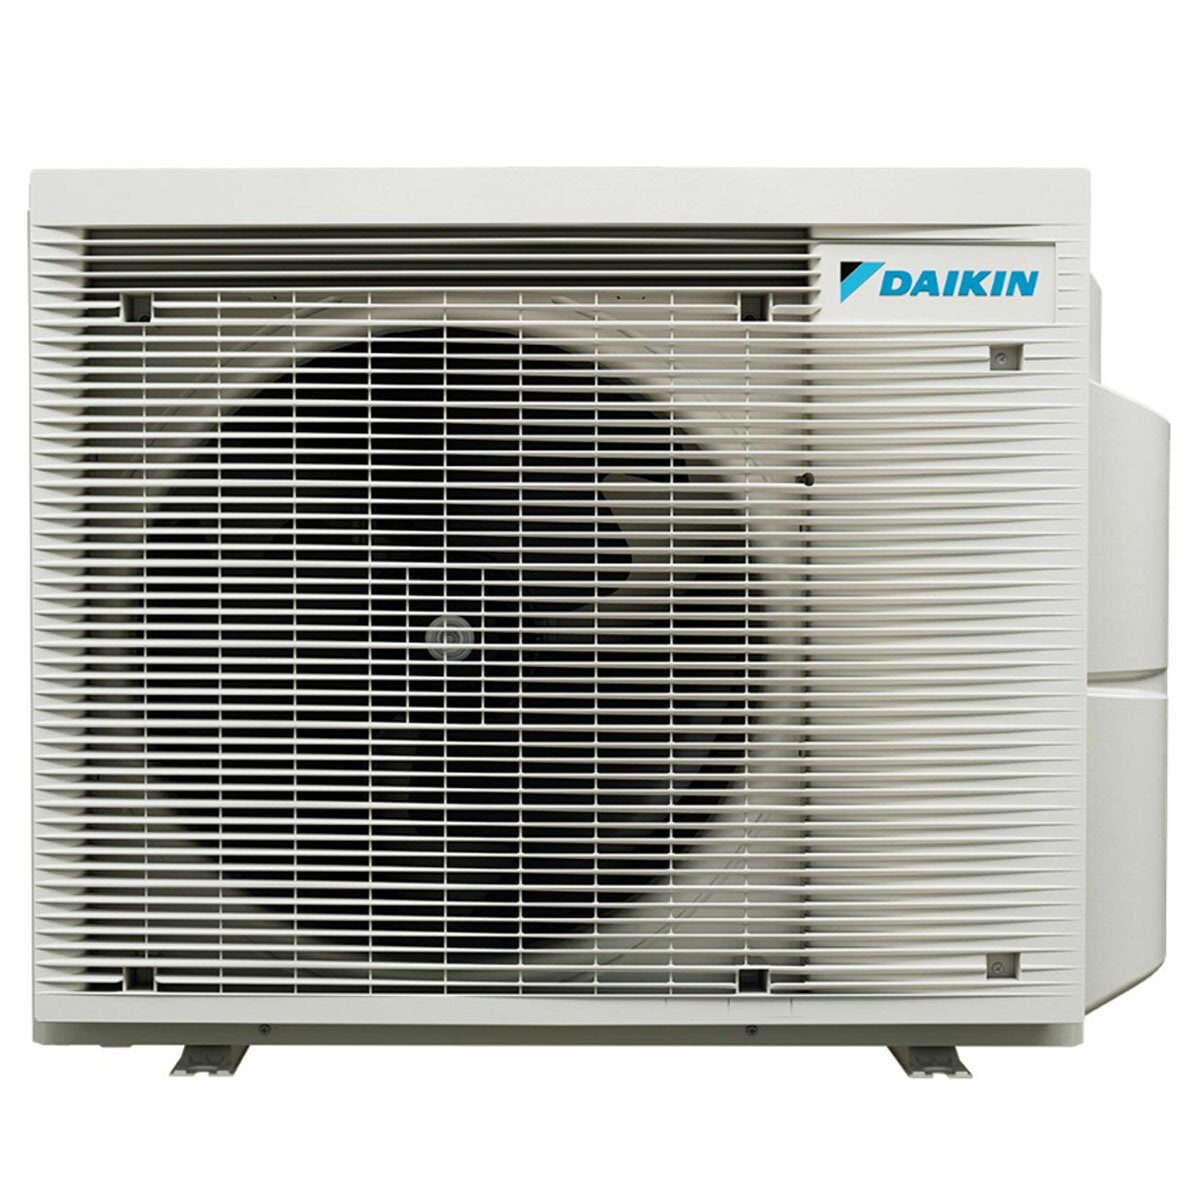 Daikin Stylish White Trial Split-Klimaanlage 7000+7000+9000 BTU Inverter A+++ WLAN-Außeneinheit 4 kW